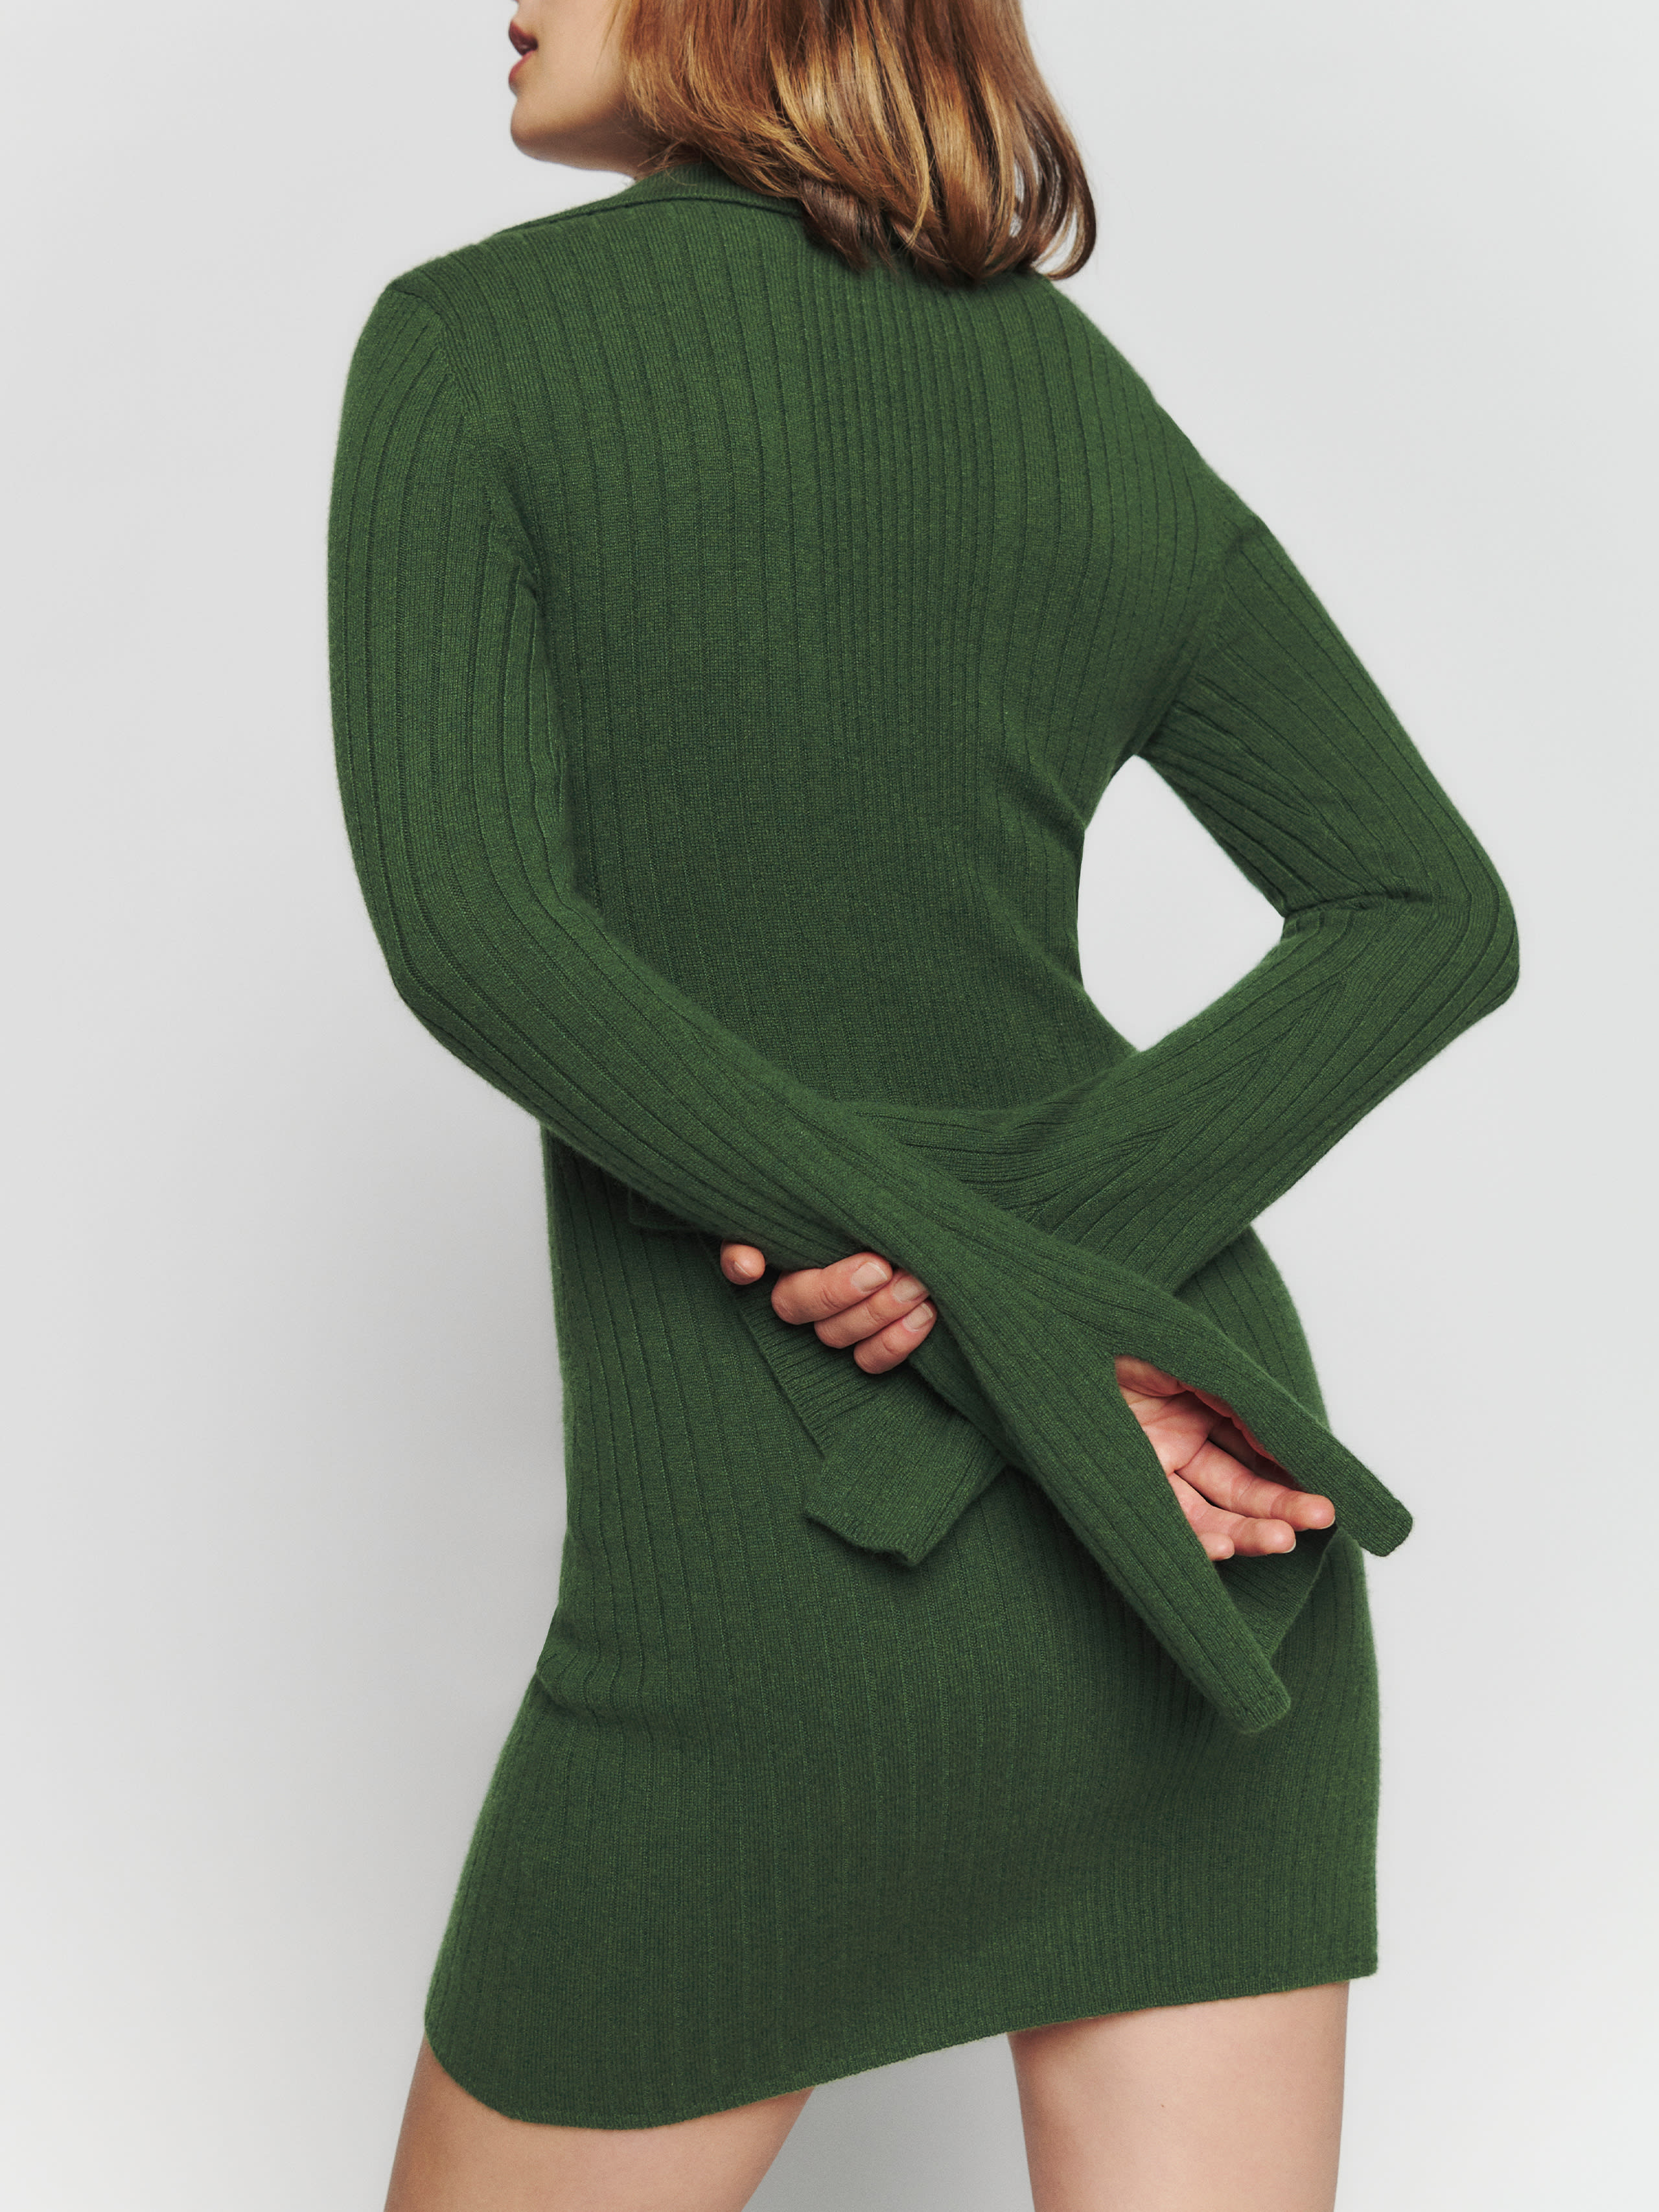 Farfalle Cashmere Sweater Mini Dress, thumbnail image 3